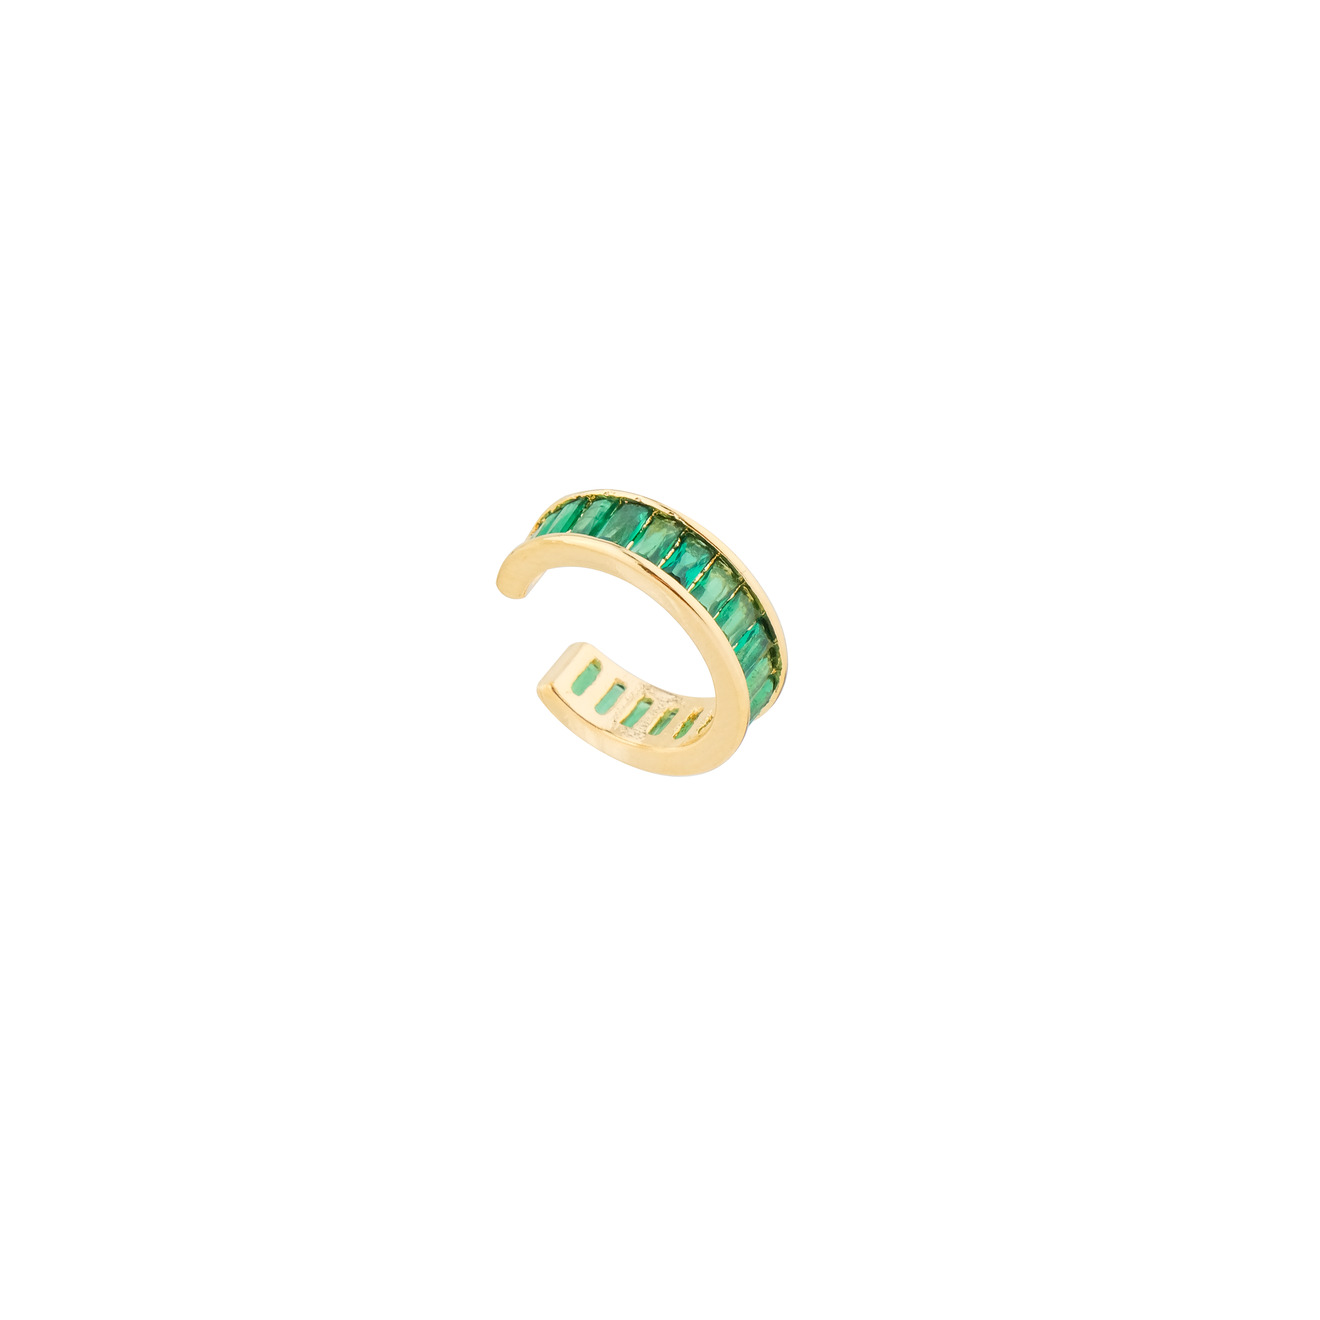 Herald Percy Золотистый кафф с зелеными кристаллами herald percy серебристое кольцо с белыми и зелеными кристаллами